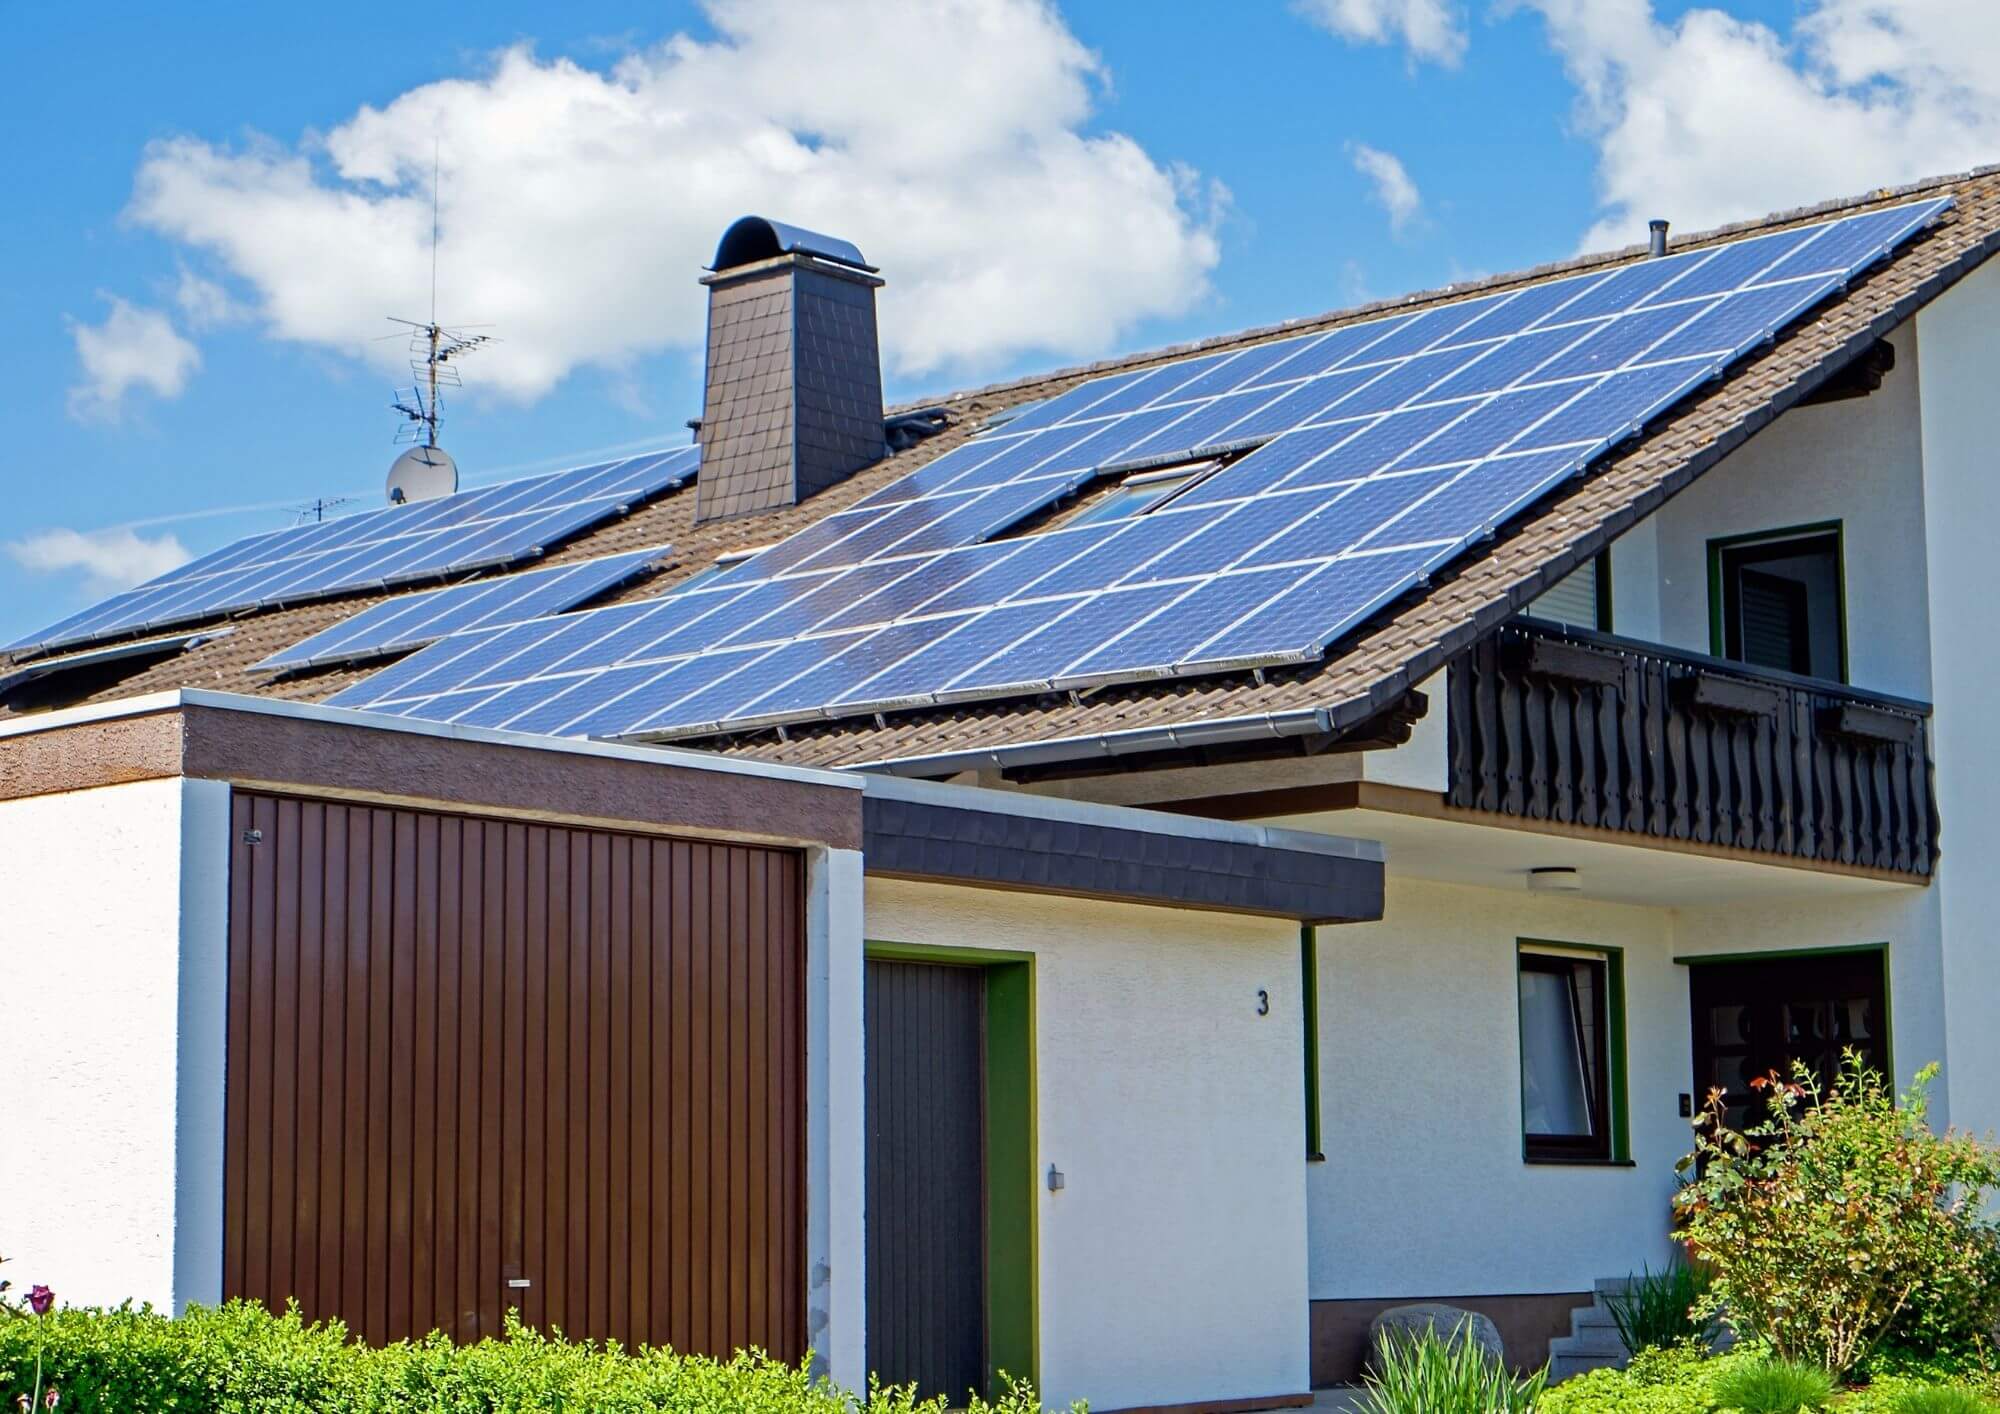 Cate Panouri Fotovoltaice Sunt Necesare Pentru O Casa - economielaenergie.ro